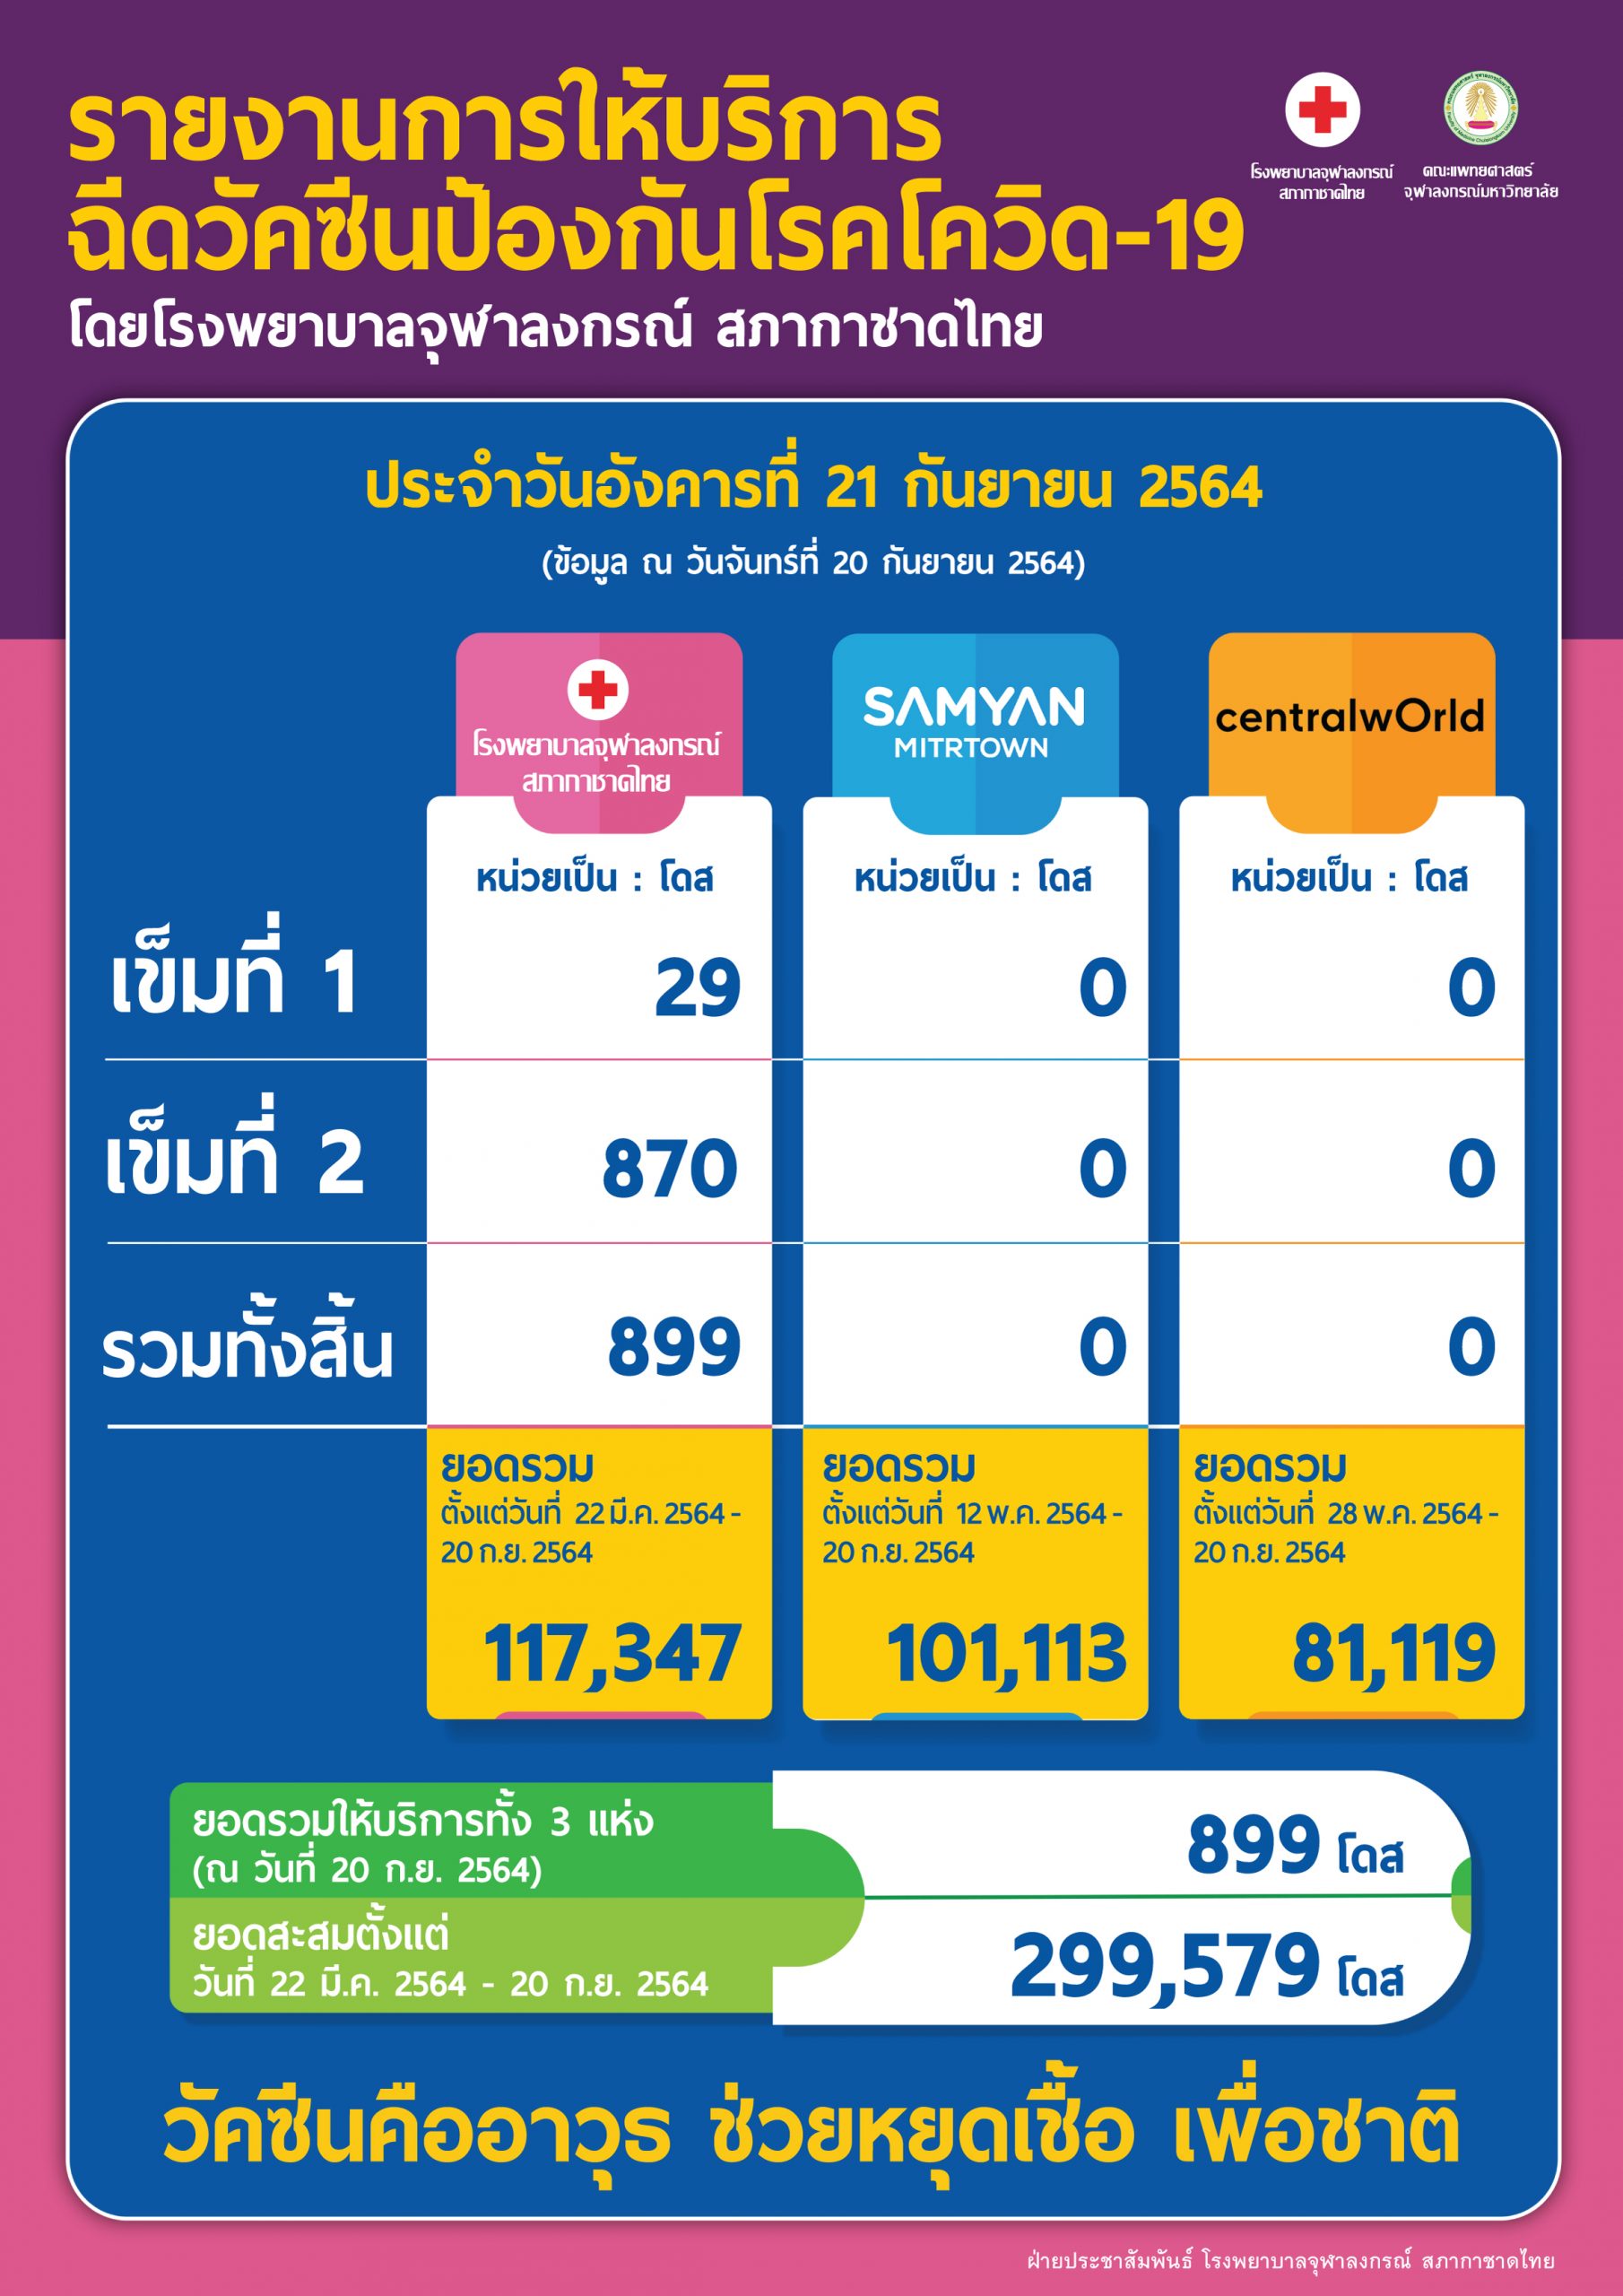 รายงานการให้บริการฉีดวัคซีนป้องกันโรคโควิด-19 โดยโรงพยาบาลจุฬาลงกรณ์ สภากาชาดไทย ประจำวันอังคารที่ 21 กันยายน 2564